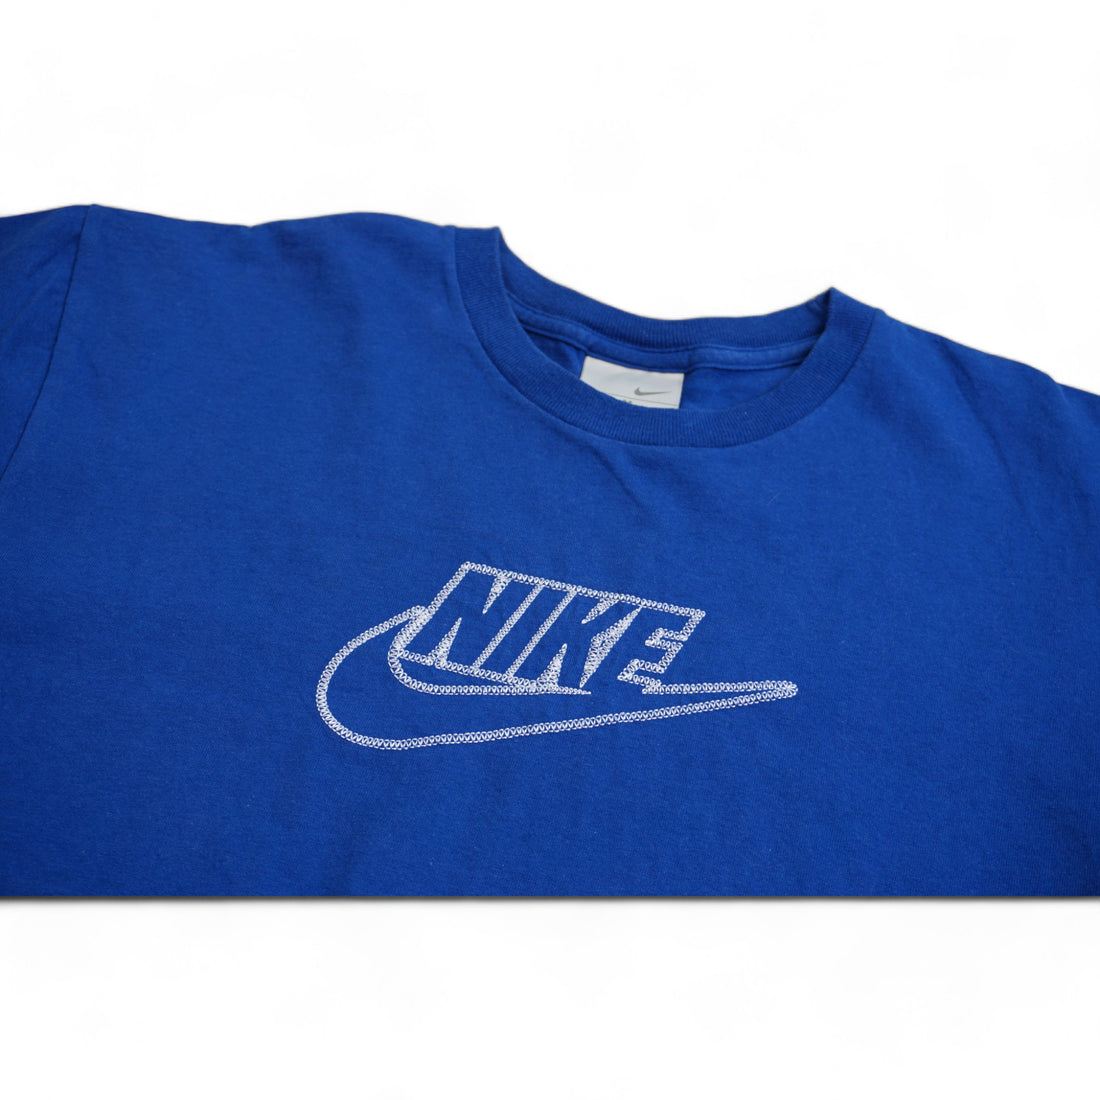 Nike Vintage Tshirt (M)